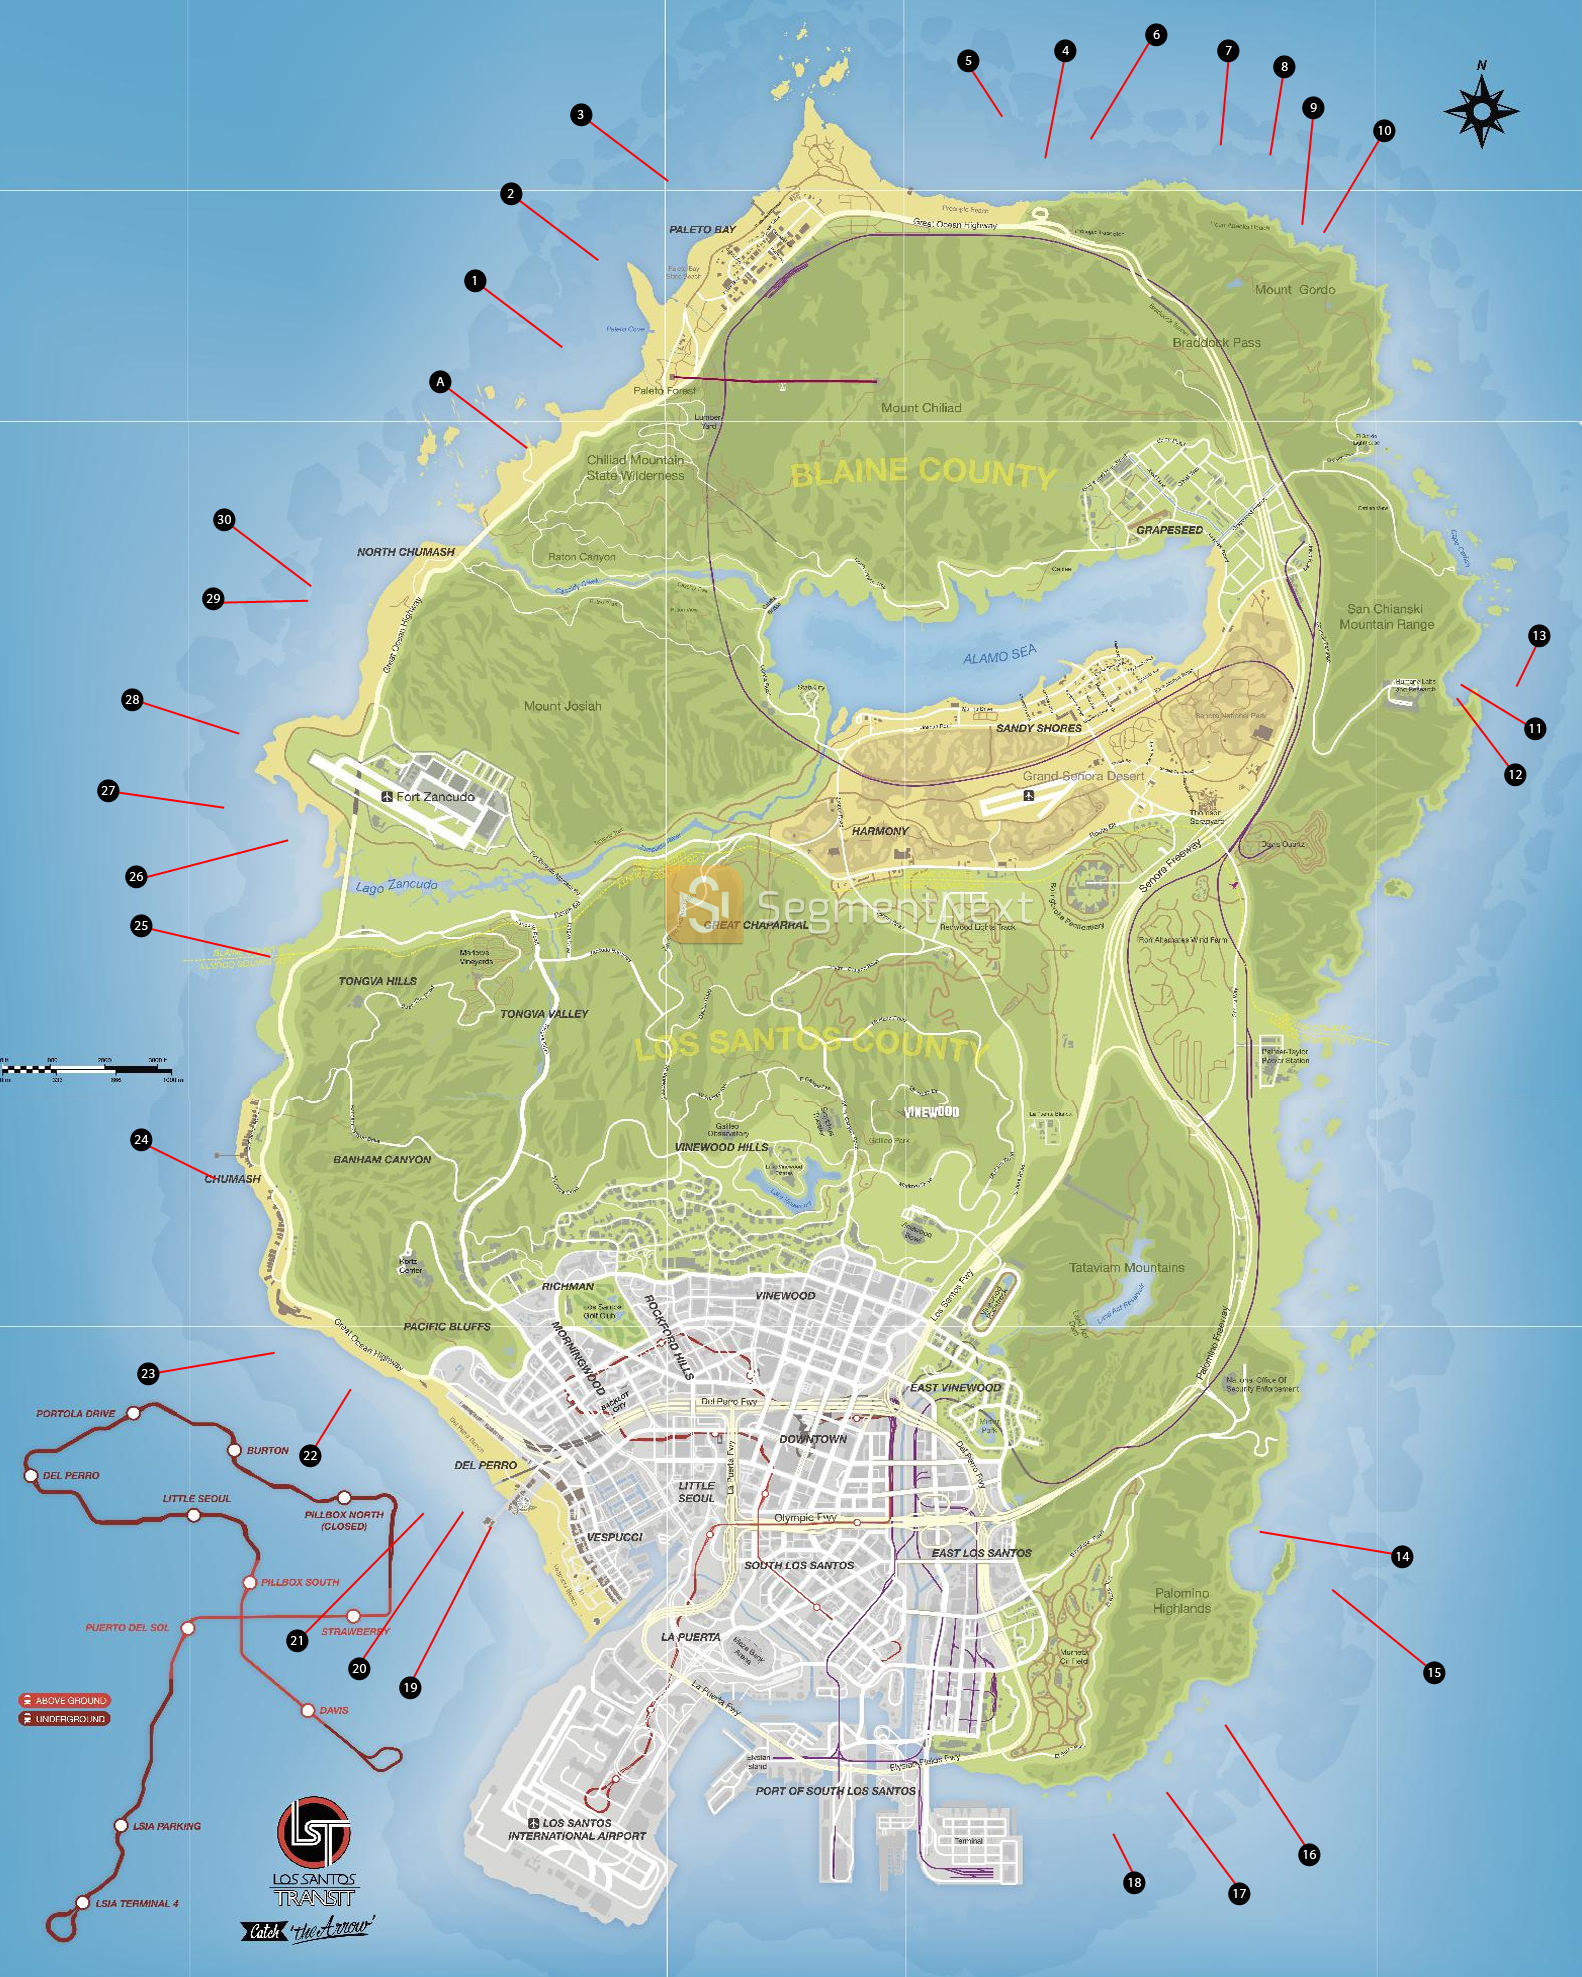 GTA 5: mapa dos resíduos nucleares